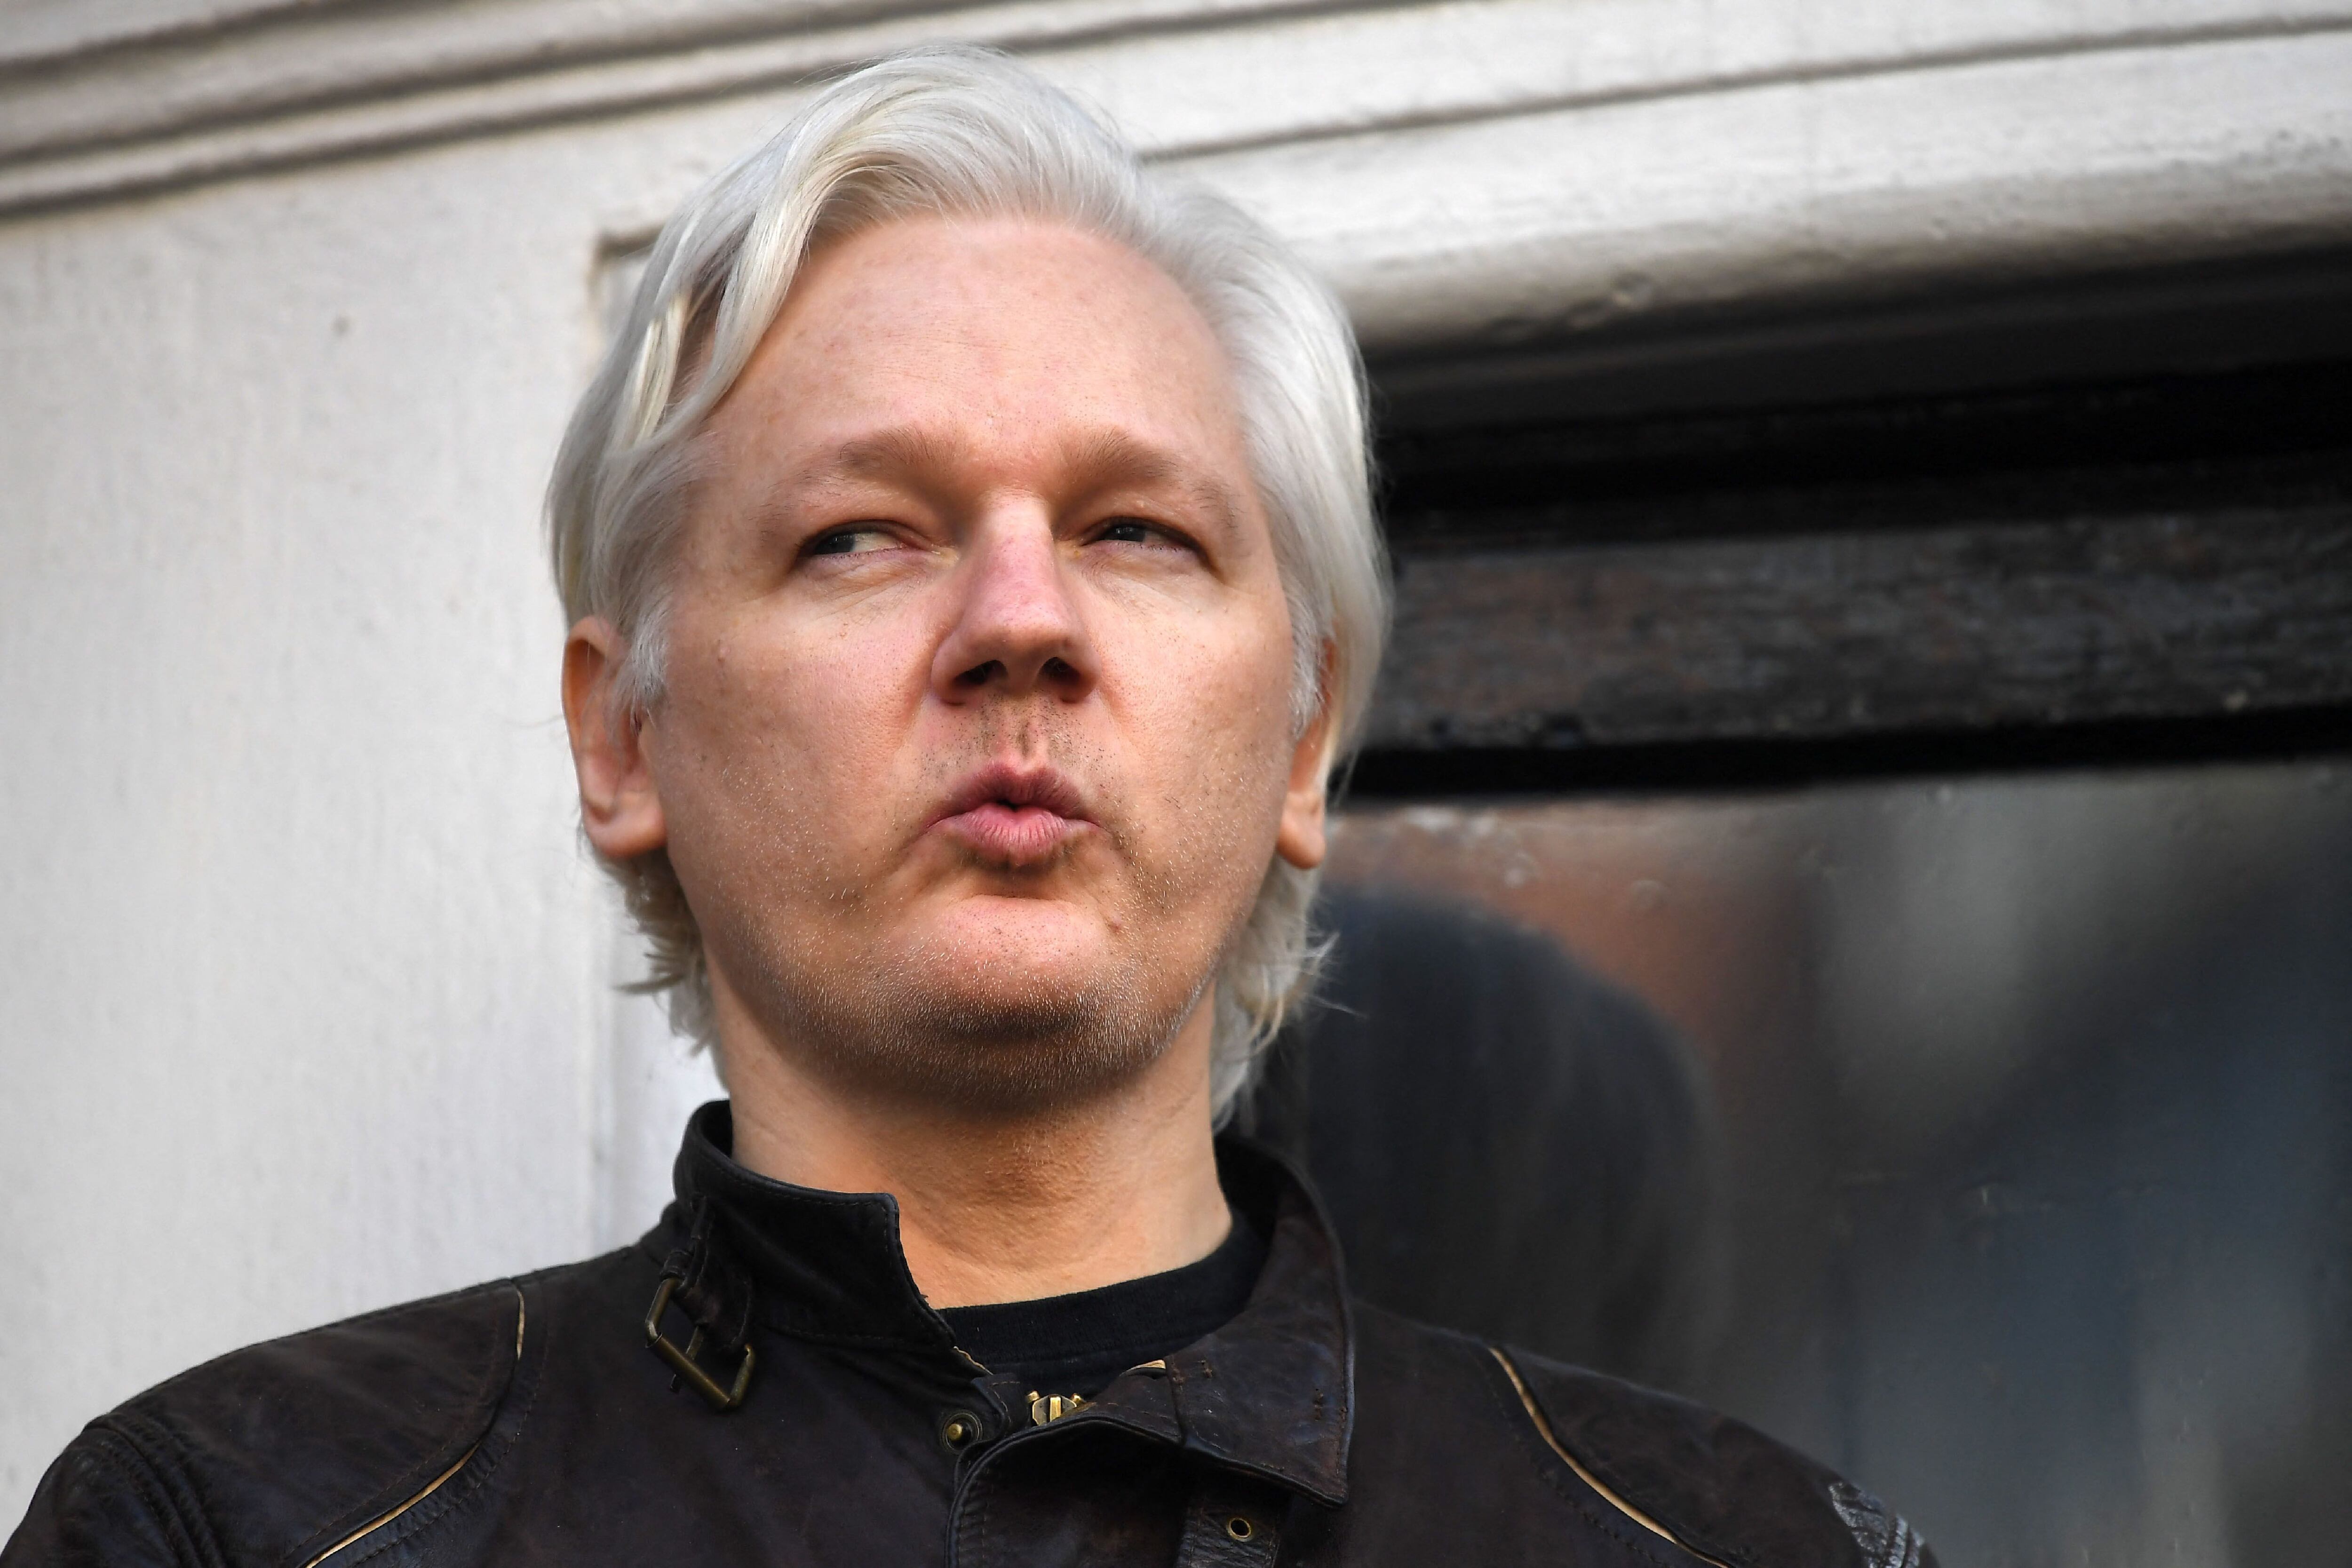 Julian Assange tuvo una infancia complicada, ya que no conoció a su padre hasta los 25 años y su madre fue víctima de violencia intrafamialiar por parte de Leif Meynell. Foto: Justin TALLIS/AFP